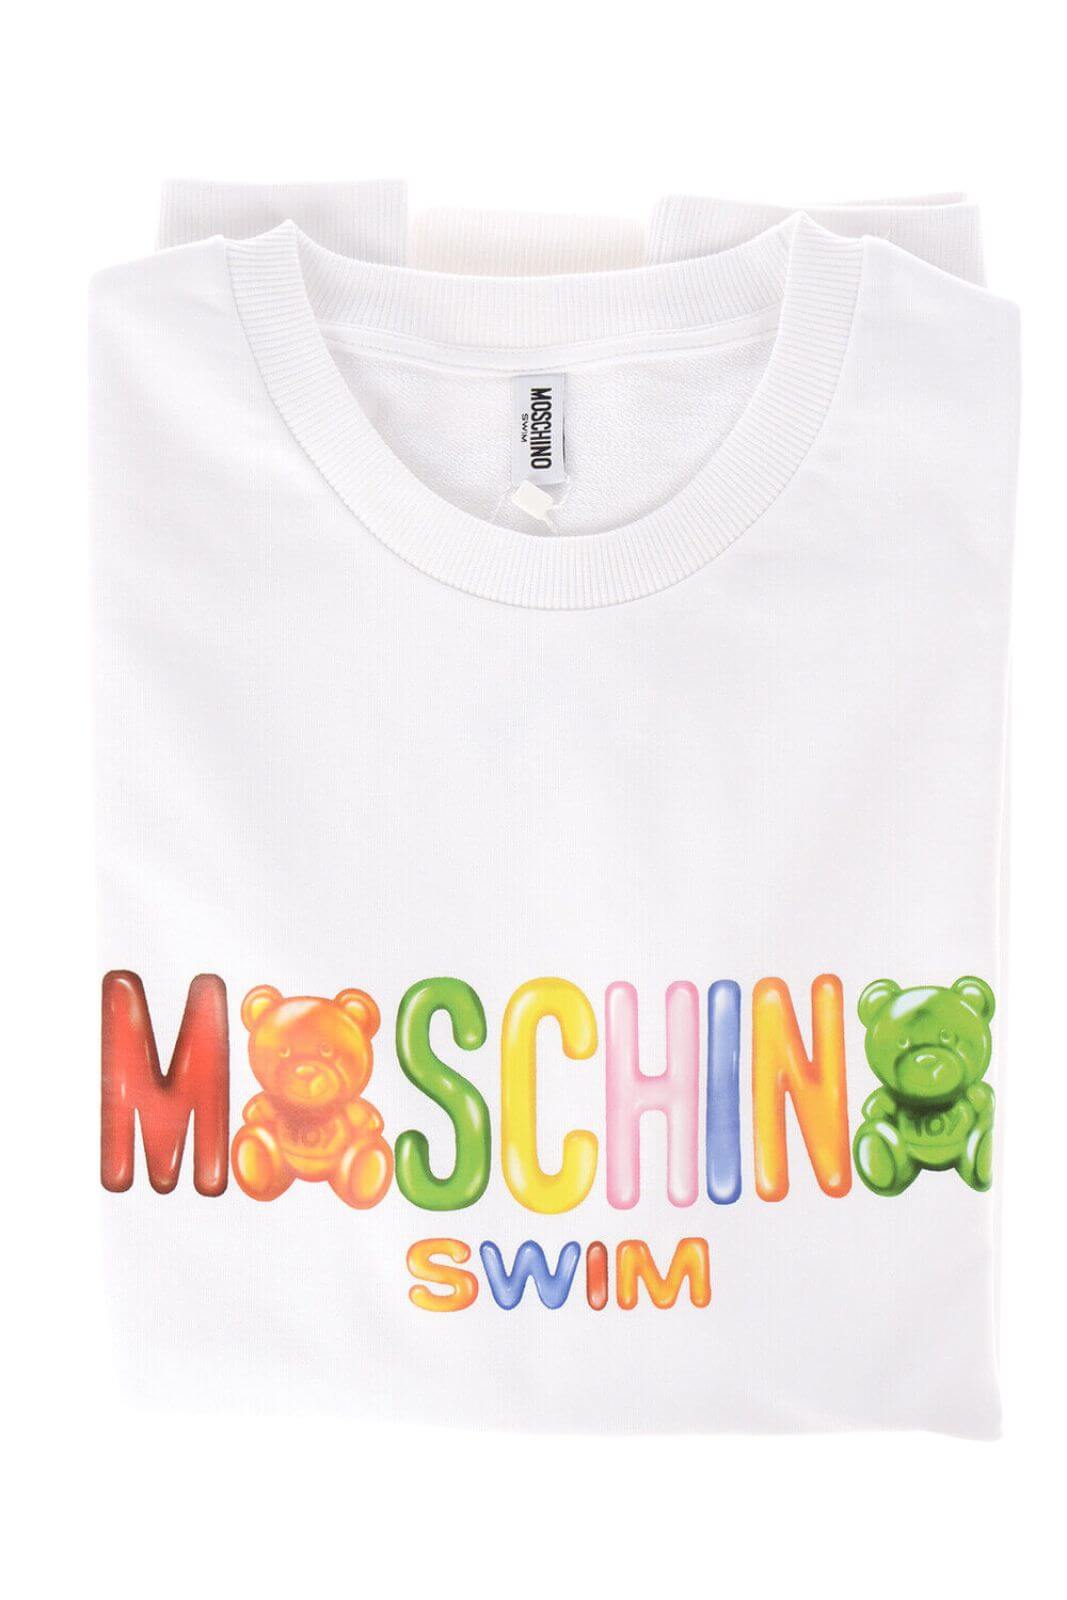 Moschino Swim Felpa Donna lettering multicolore